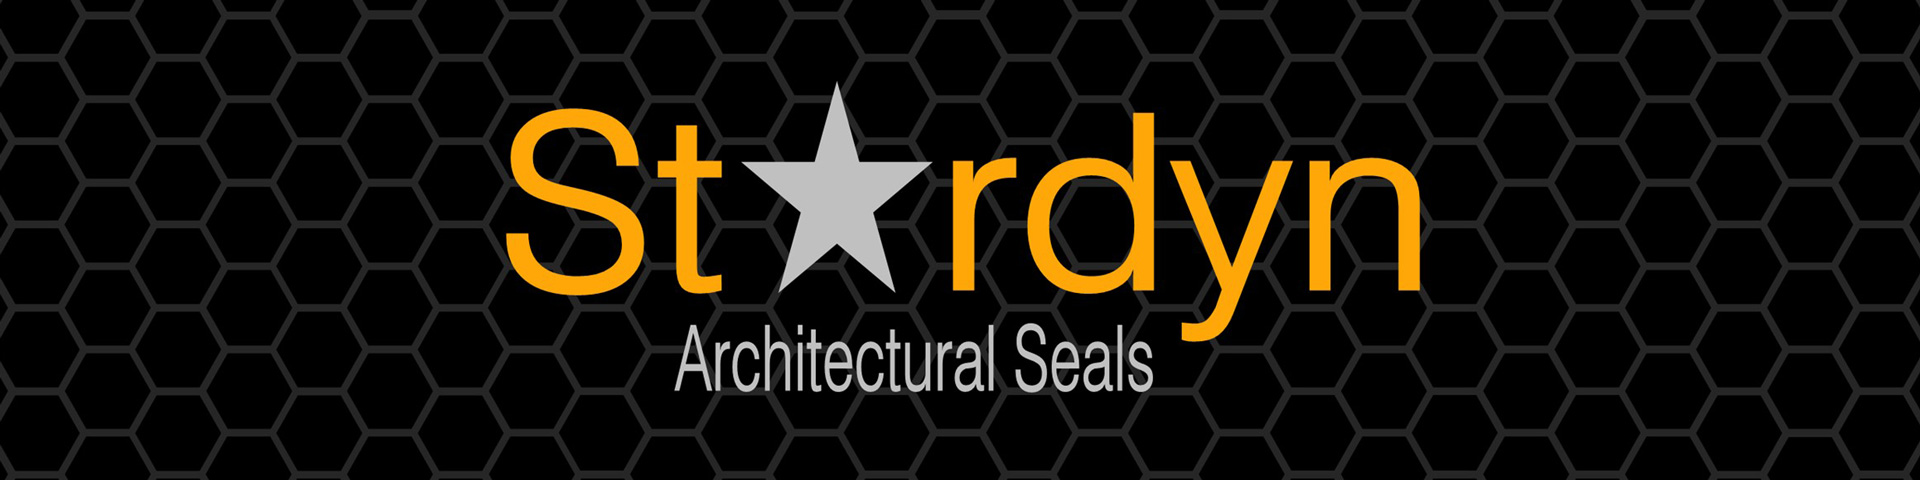 Stardyn-Architectural-Seals-Slideshow-A3-